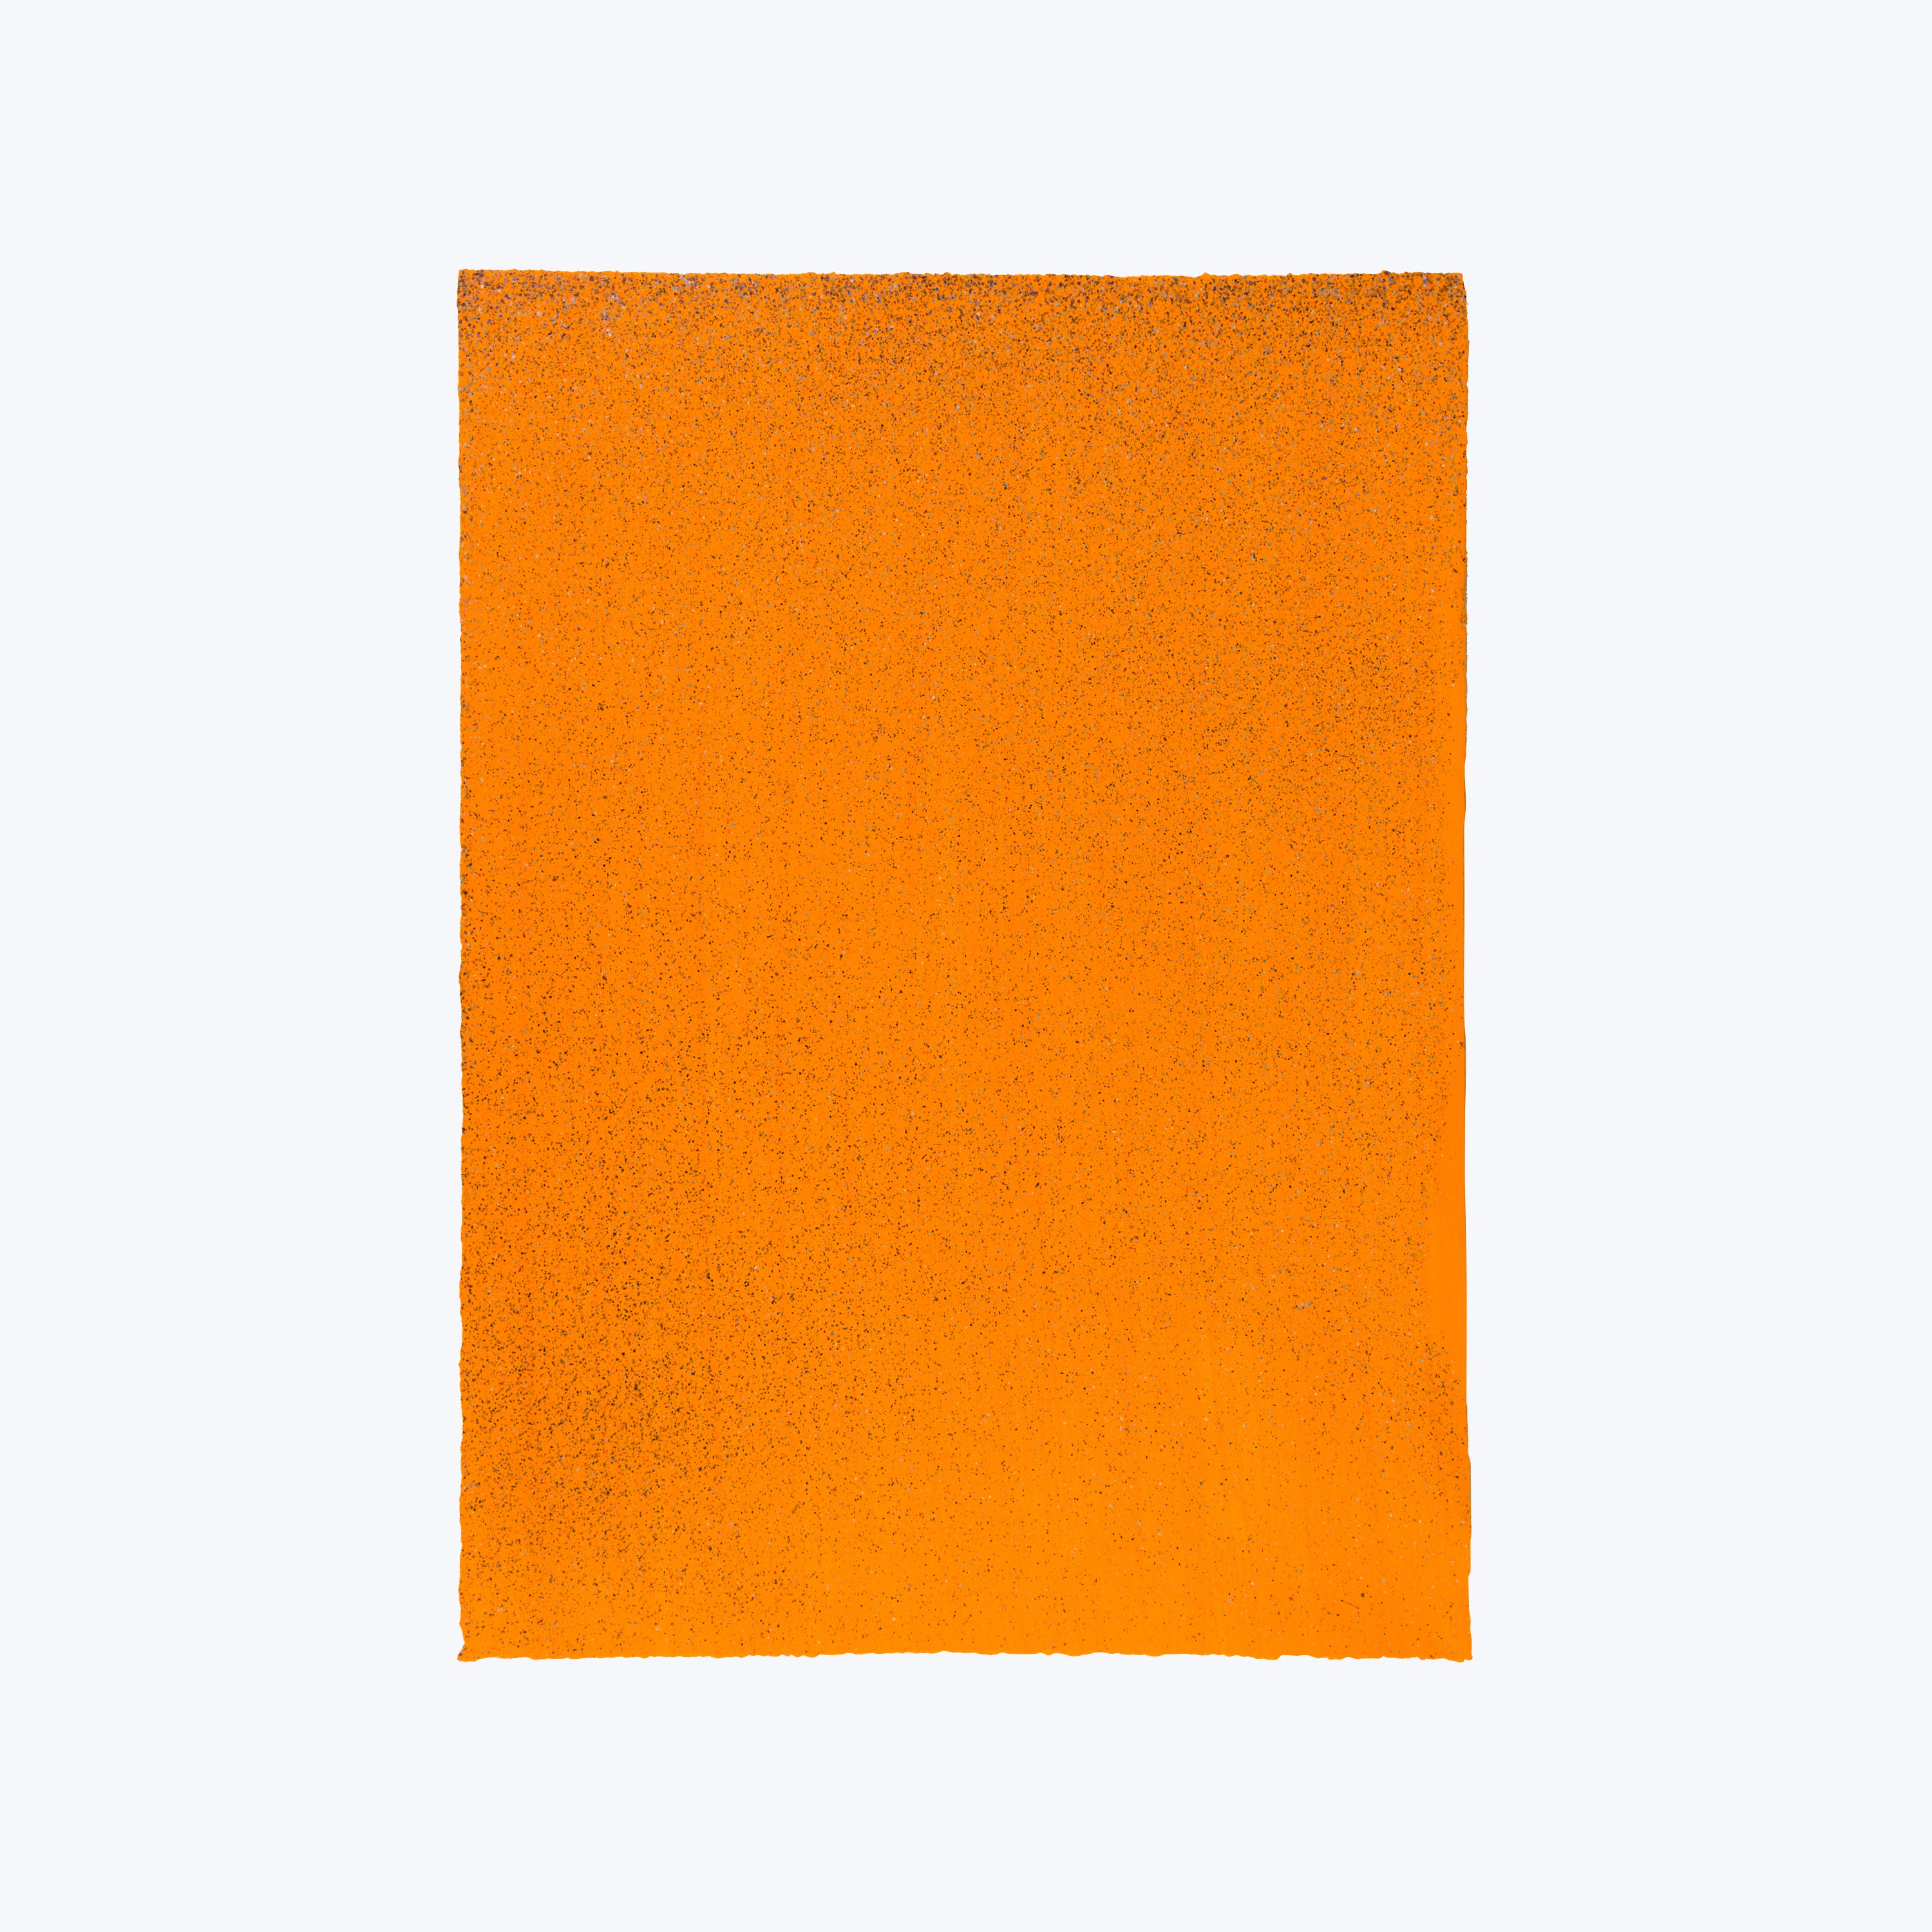 Untitled, 2019, Orange